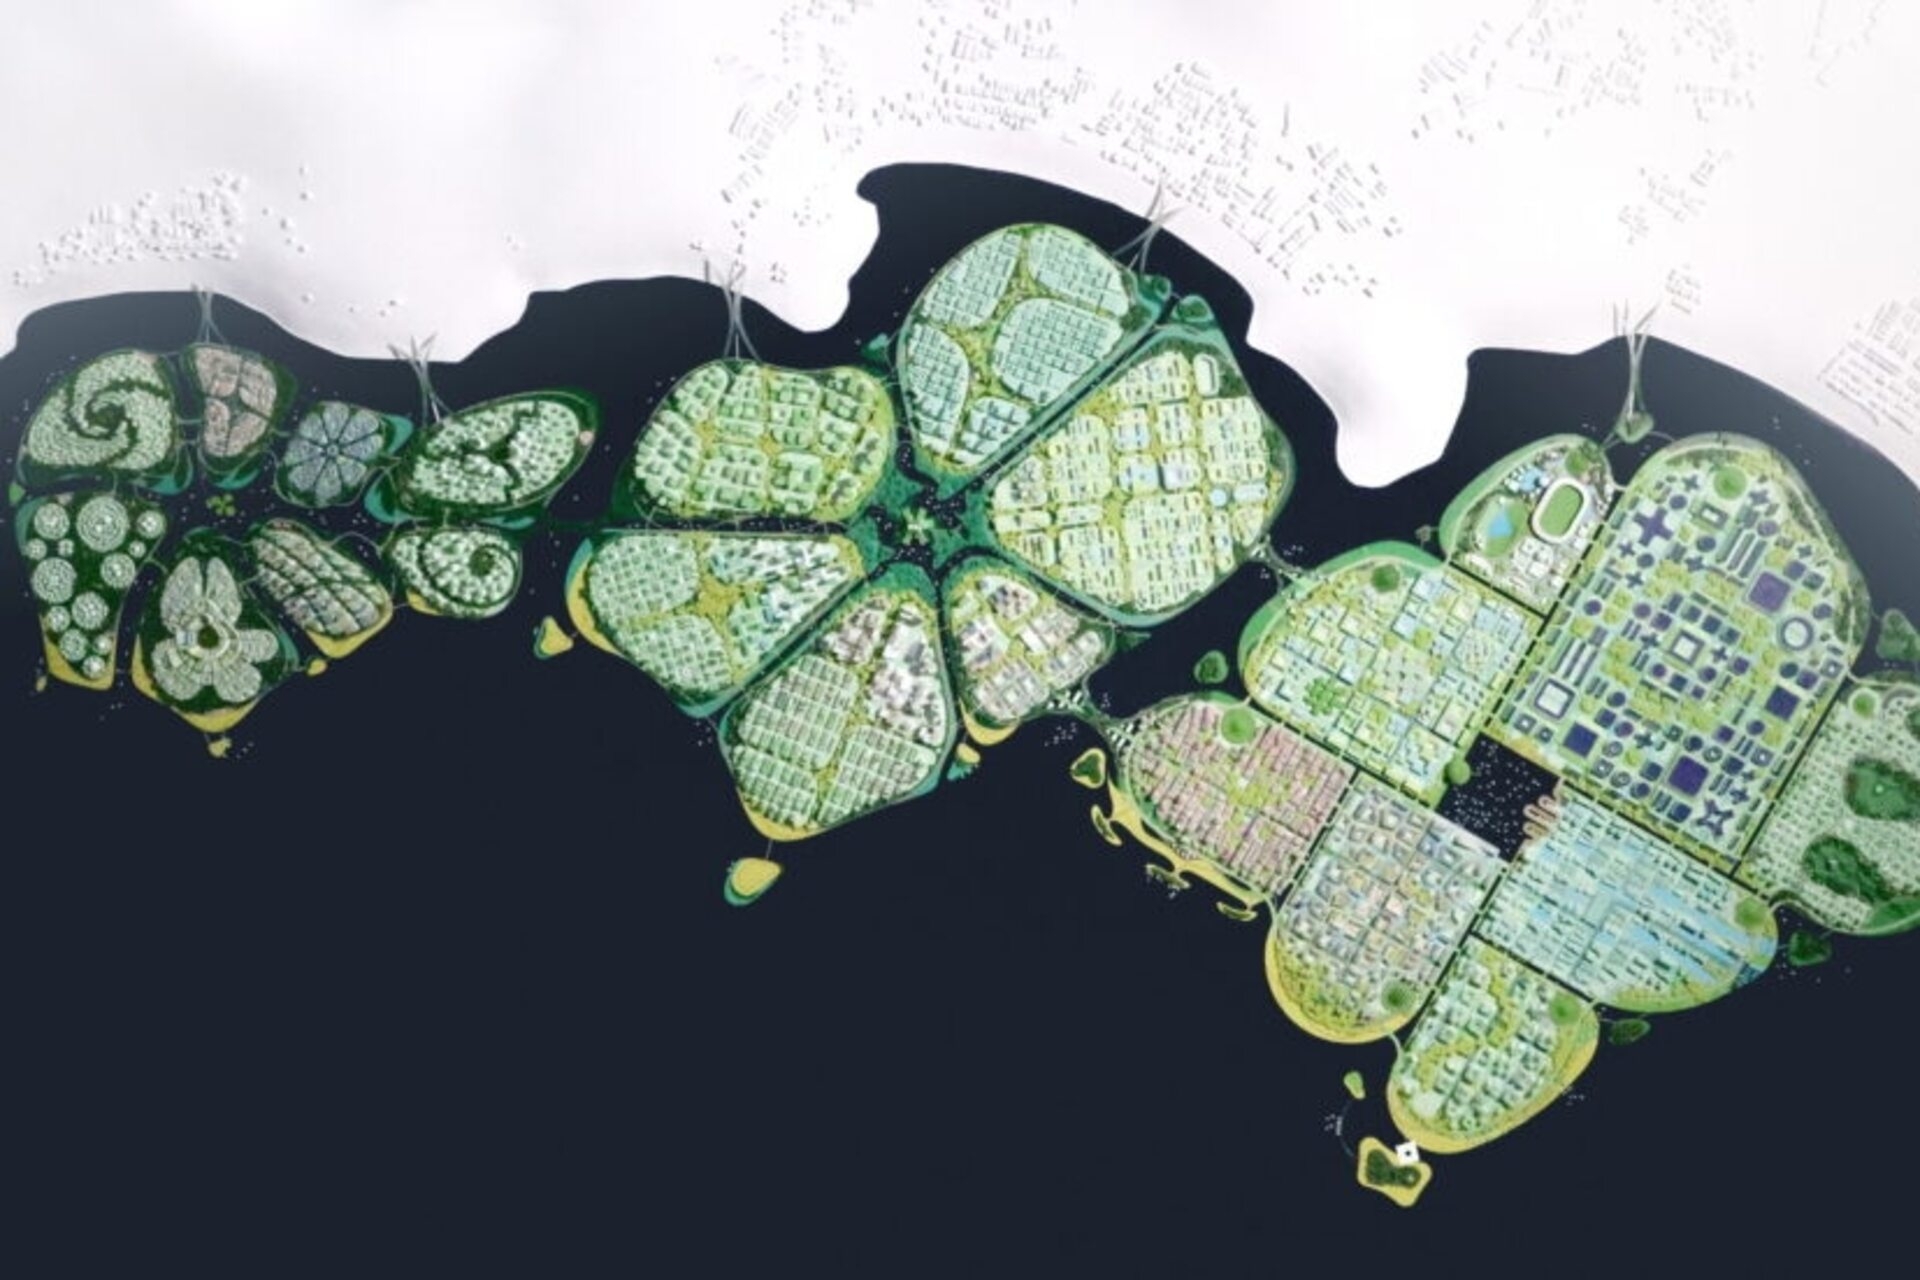 BiodiverCity: o redare aeriană a celor trei insule The Channels, The Mangroves și The Lagoon, care va forma orașul inovator și durabil BiodiverCity în 2030 în Malaezia, lângă Penang